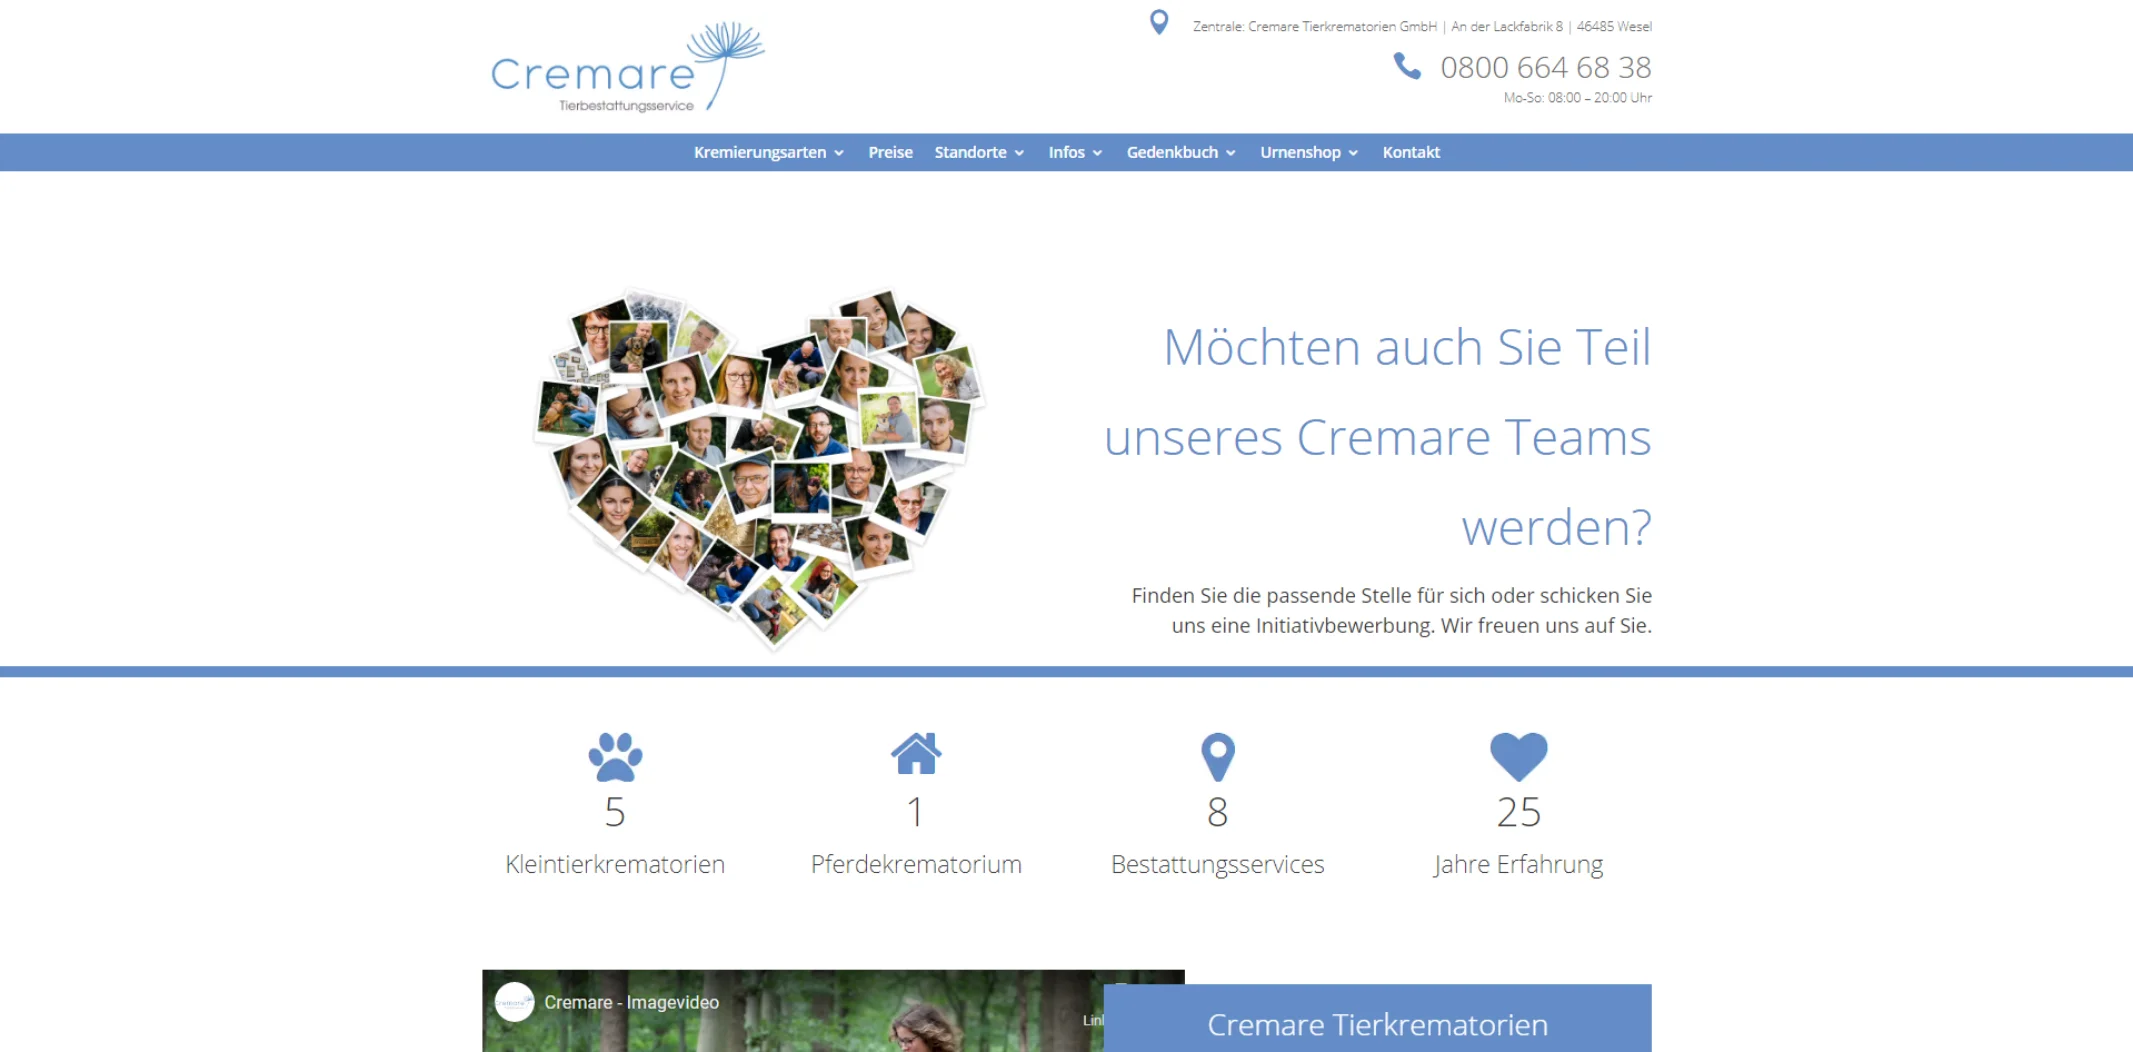 Tierkrematorium Cremare - Ihre würdevolle Tierkremierung in Deutschland